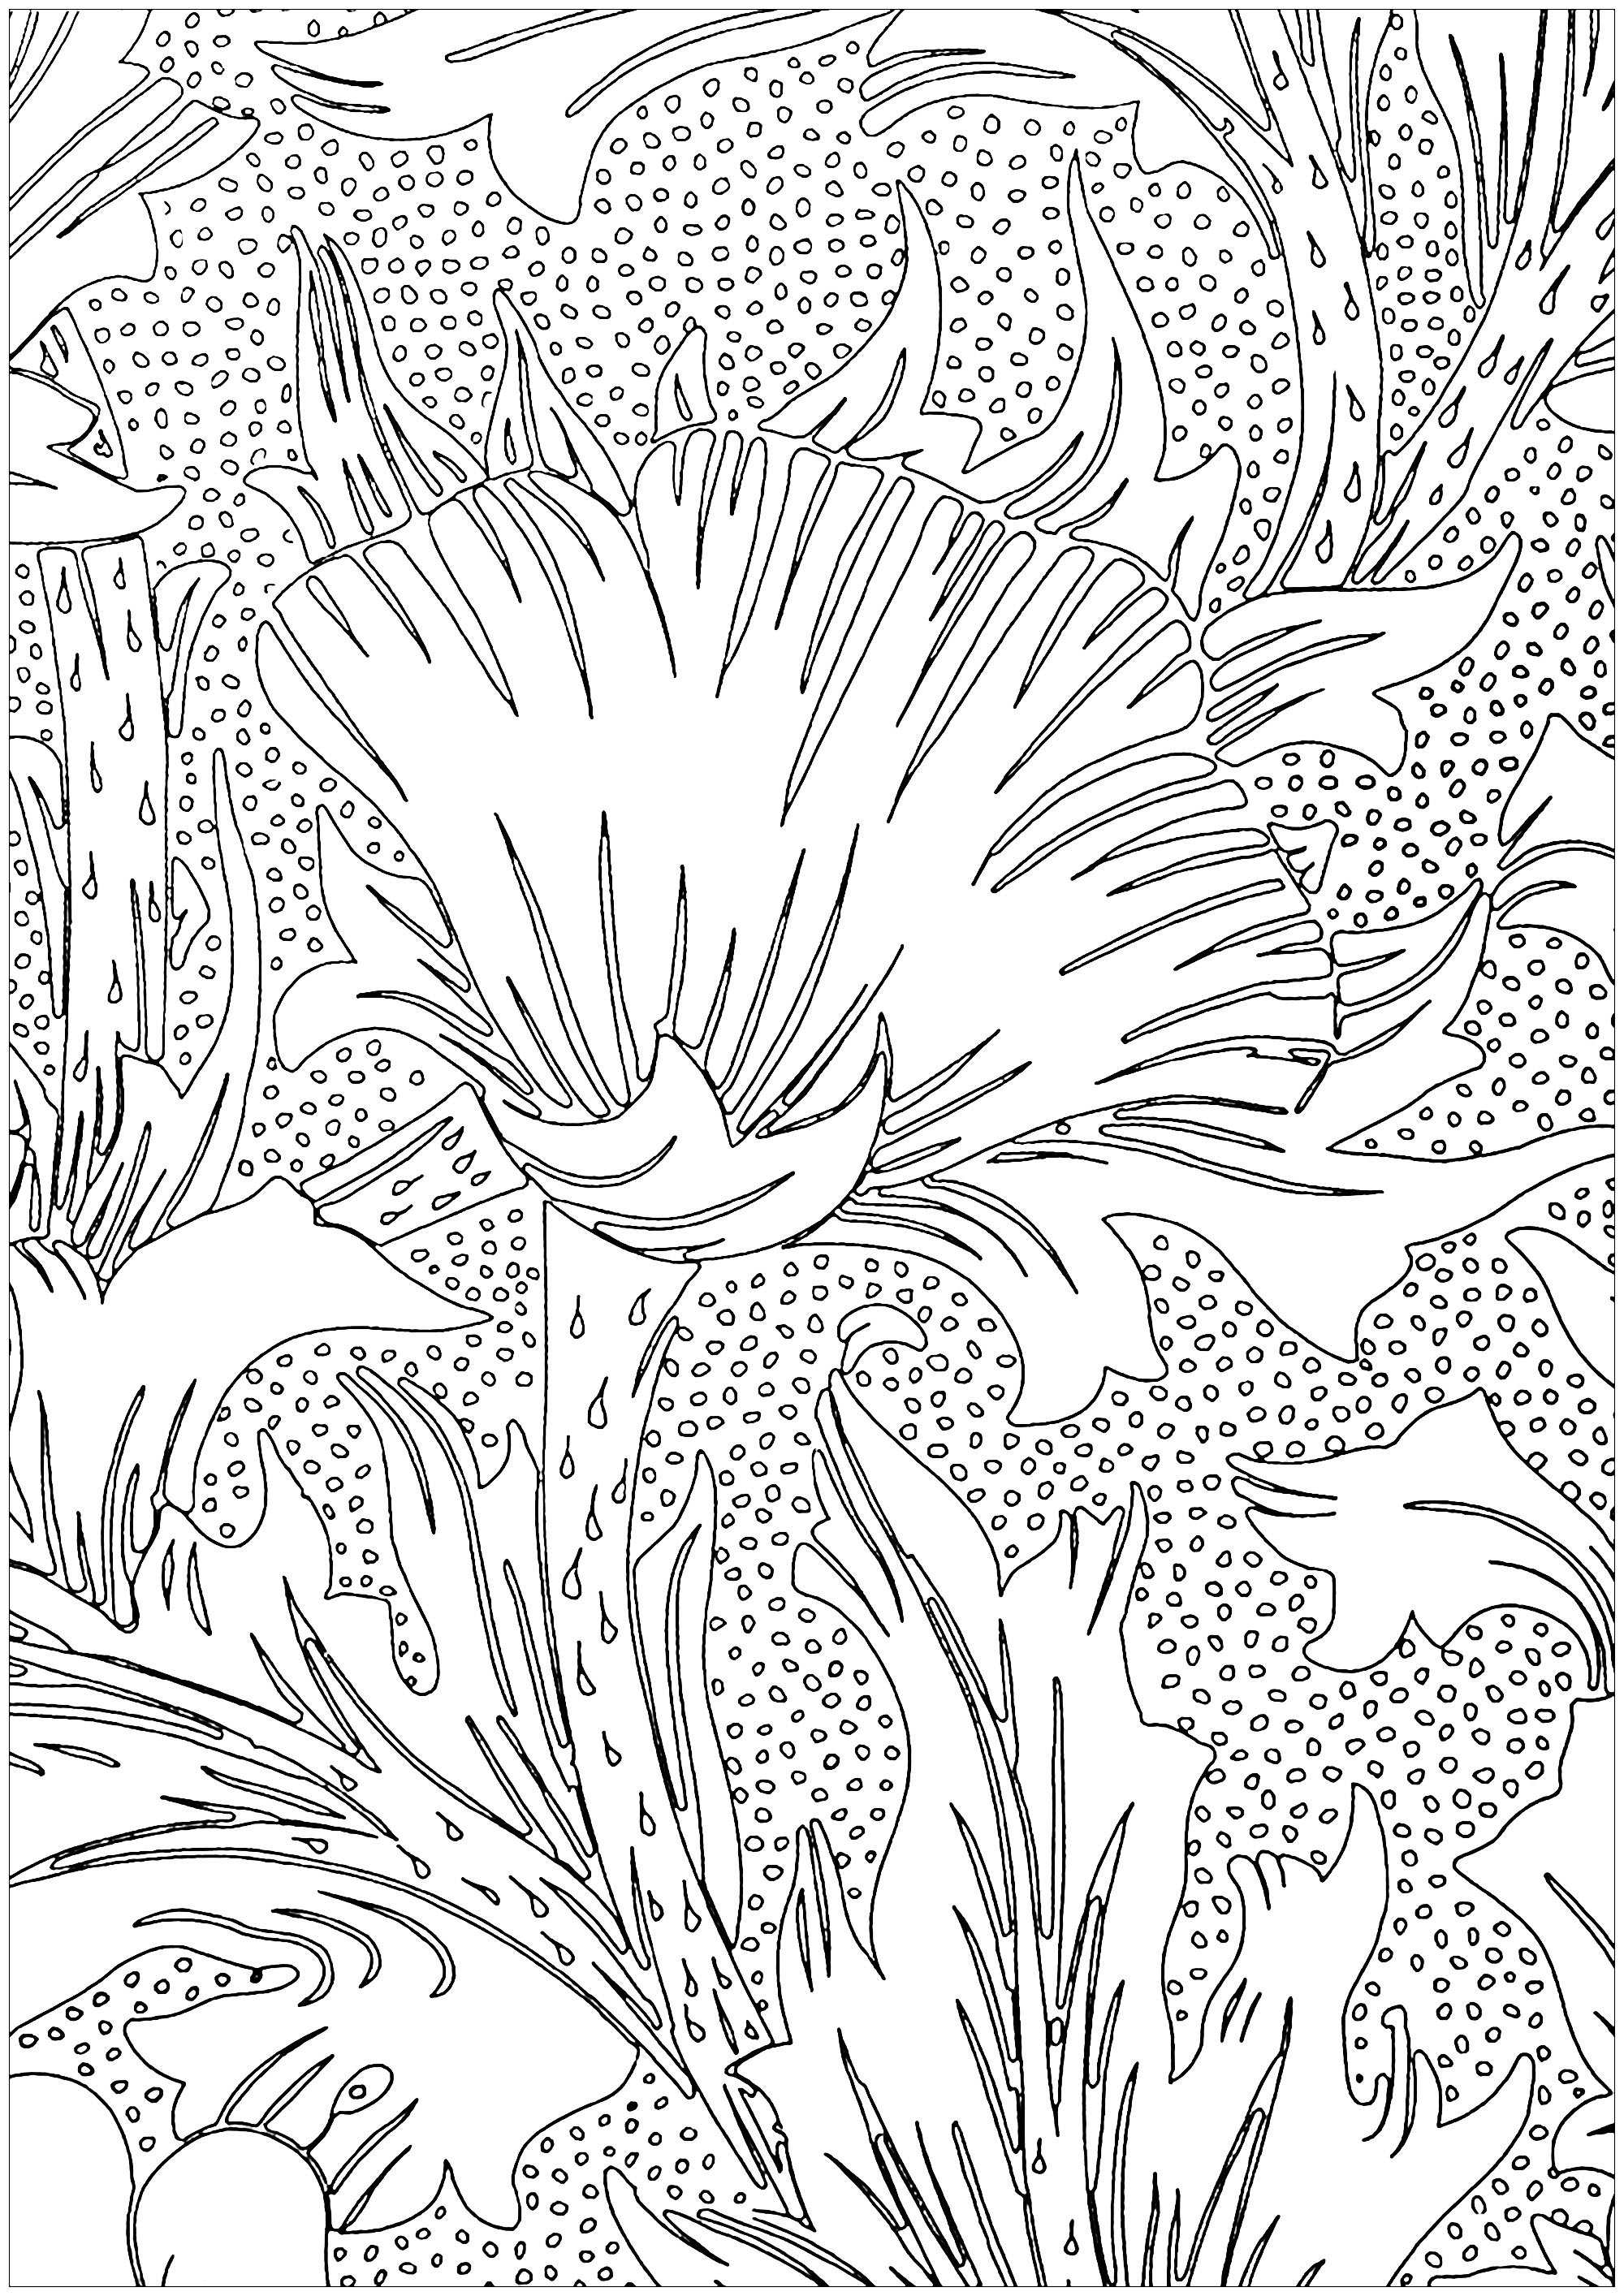 Coloriage créé à partir d'un motif de style Arts and Crafts par May Morris représentant des fleurs, et créé en 1885. May Morris (1862 1938), fille cadette de William Morris, était une artiste anglaise, artisane, brodeuse, bijoutière et principale représentante féminine du mouvement britannique Arts